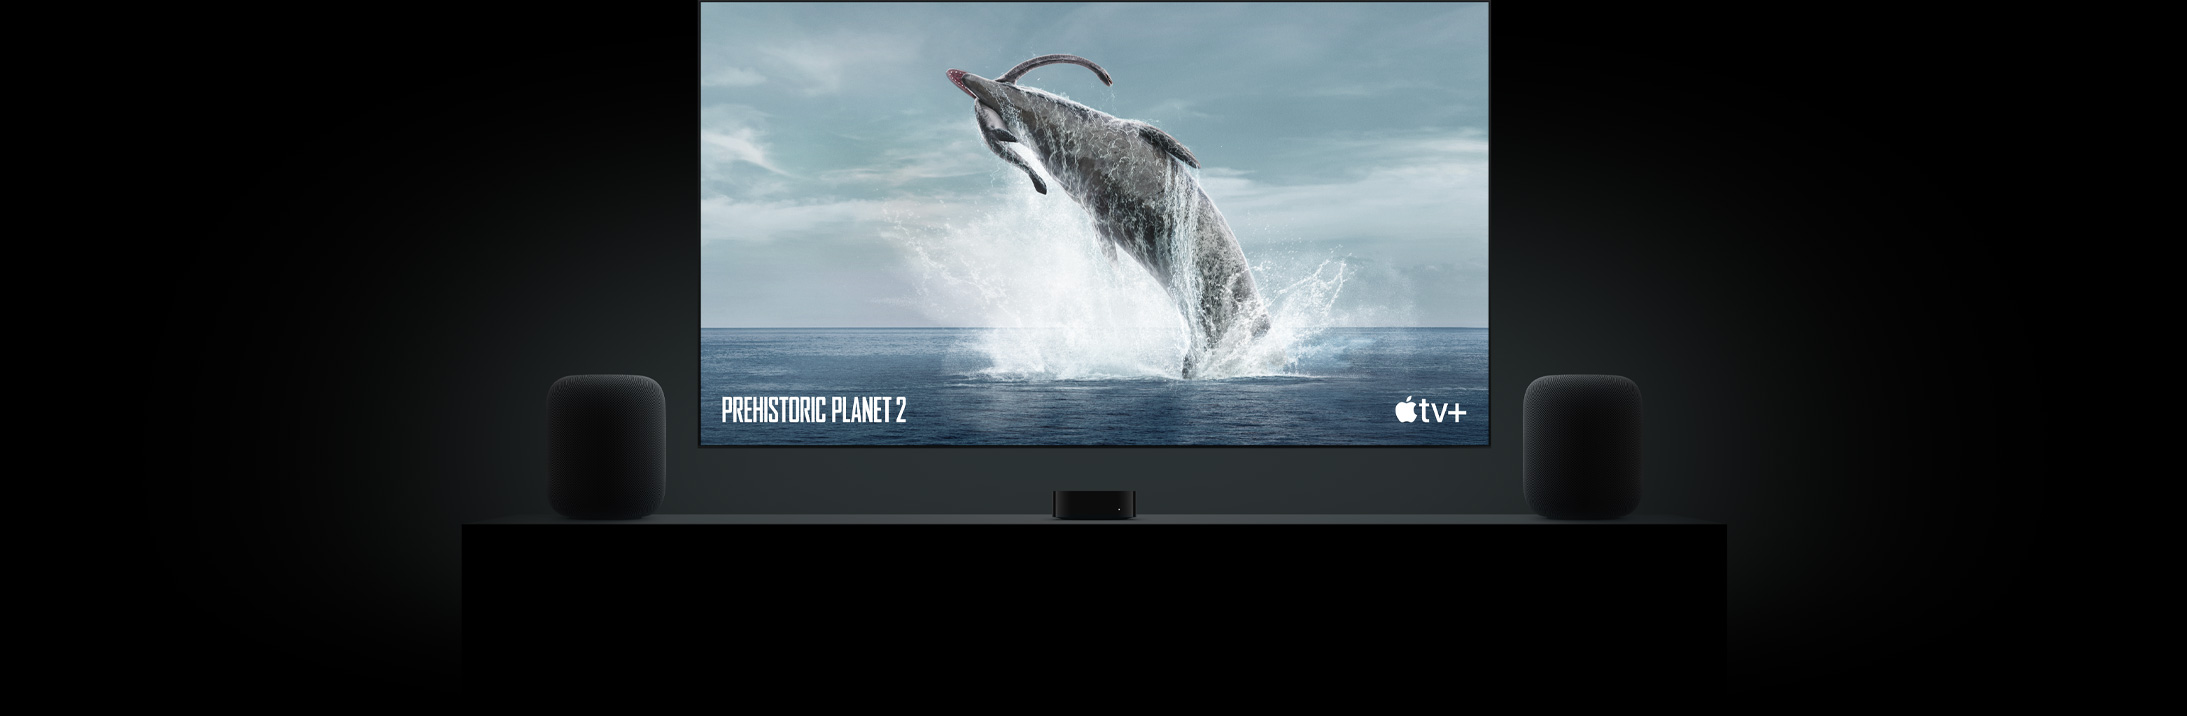 Stor flatskjerm-TV med et naturtro bilde av en dinosaur fra Prehistoric Planet. TV-en henger over en Apple TV og er omgitt av to HomePod-høyttalere på et konsollbord i stuen